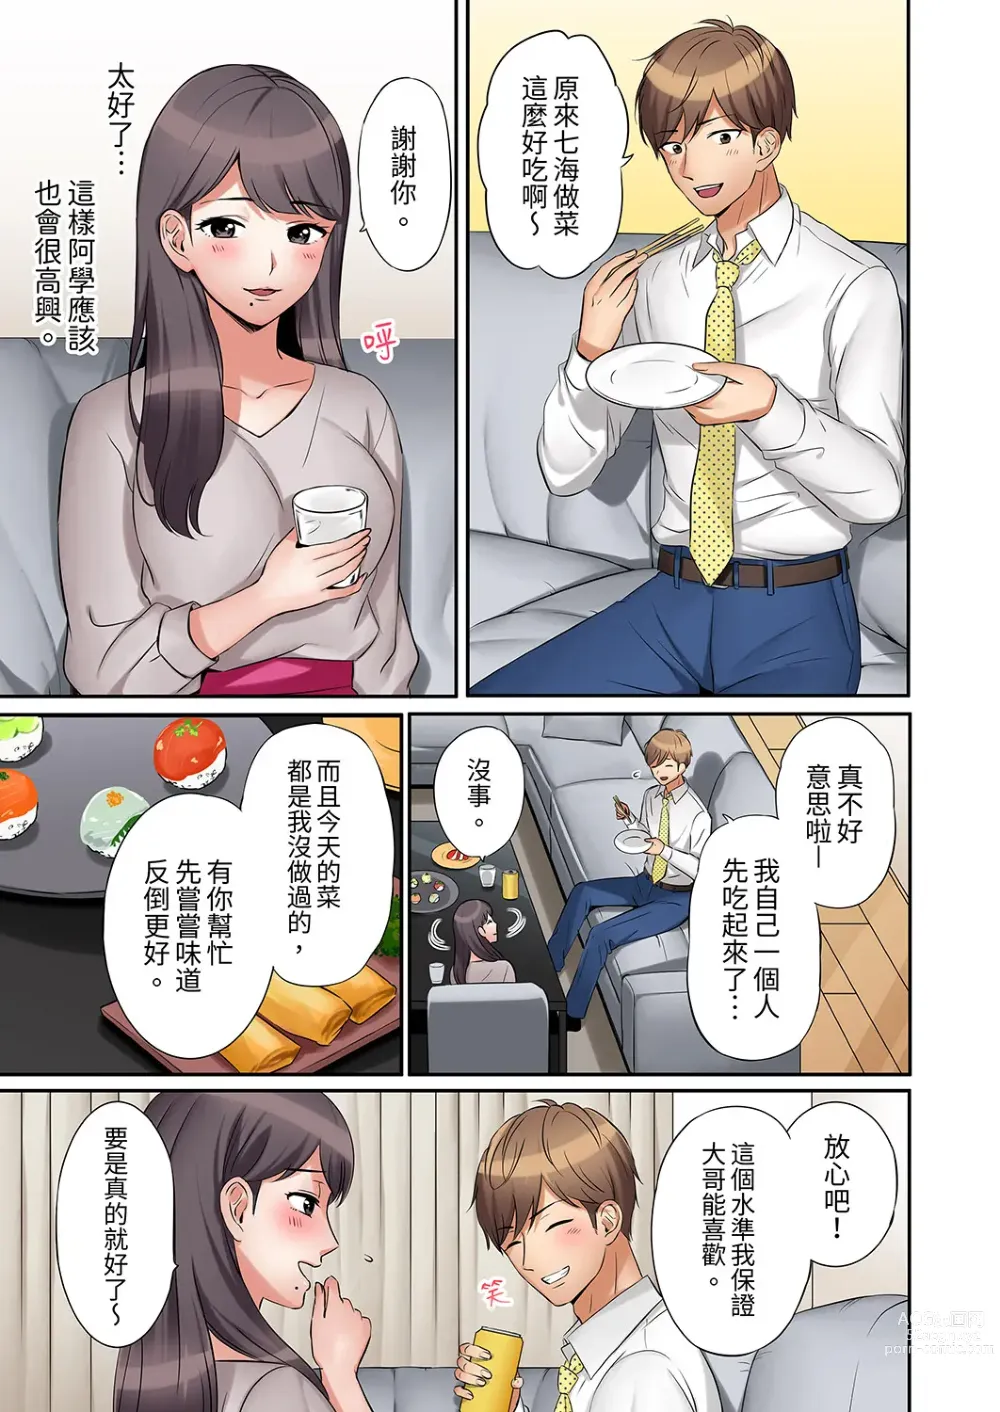 Page 11 of manga 還能再高潮3次吧？」丈夫沒回家，人妻被精力無限的小叔子弄得高潮不斷 1-30